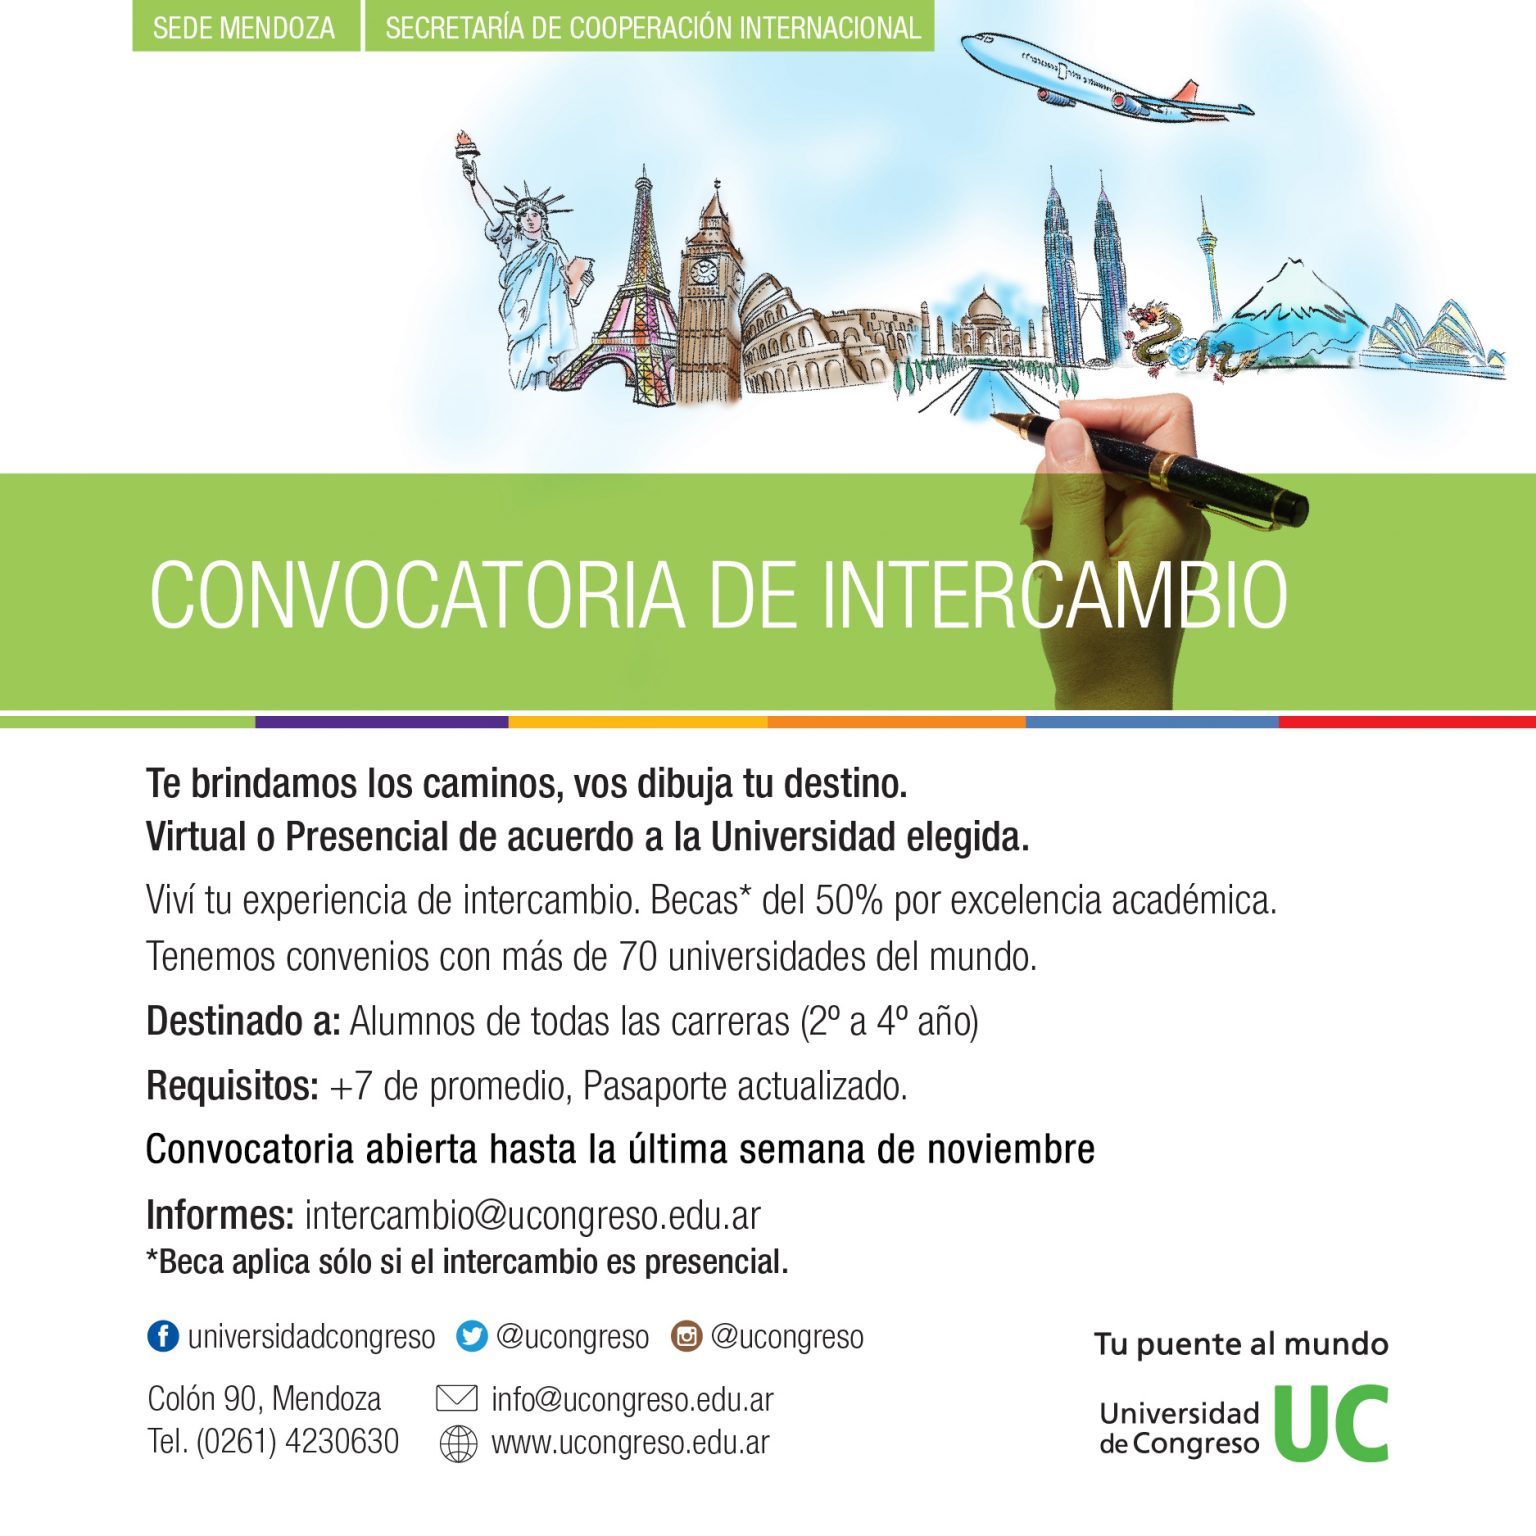 Convocatoria De Intercambio Universidad De Congreso Universidad De Congreso 1159